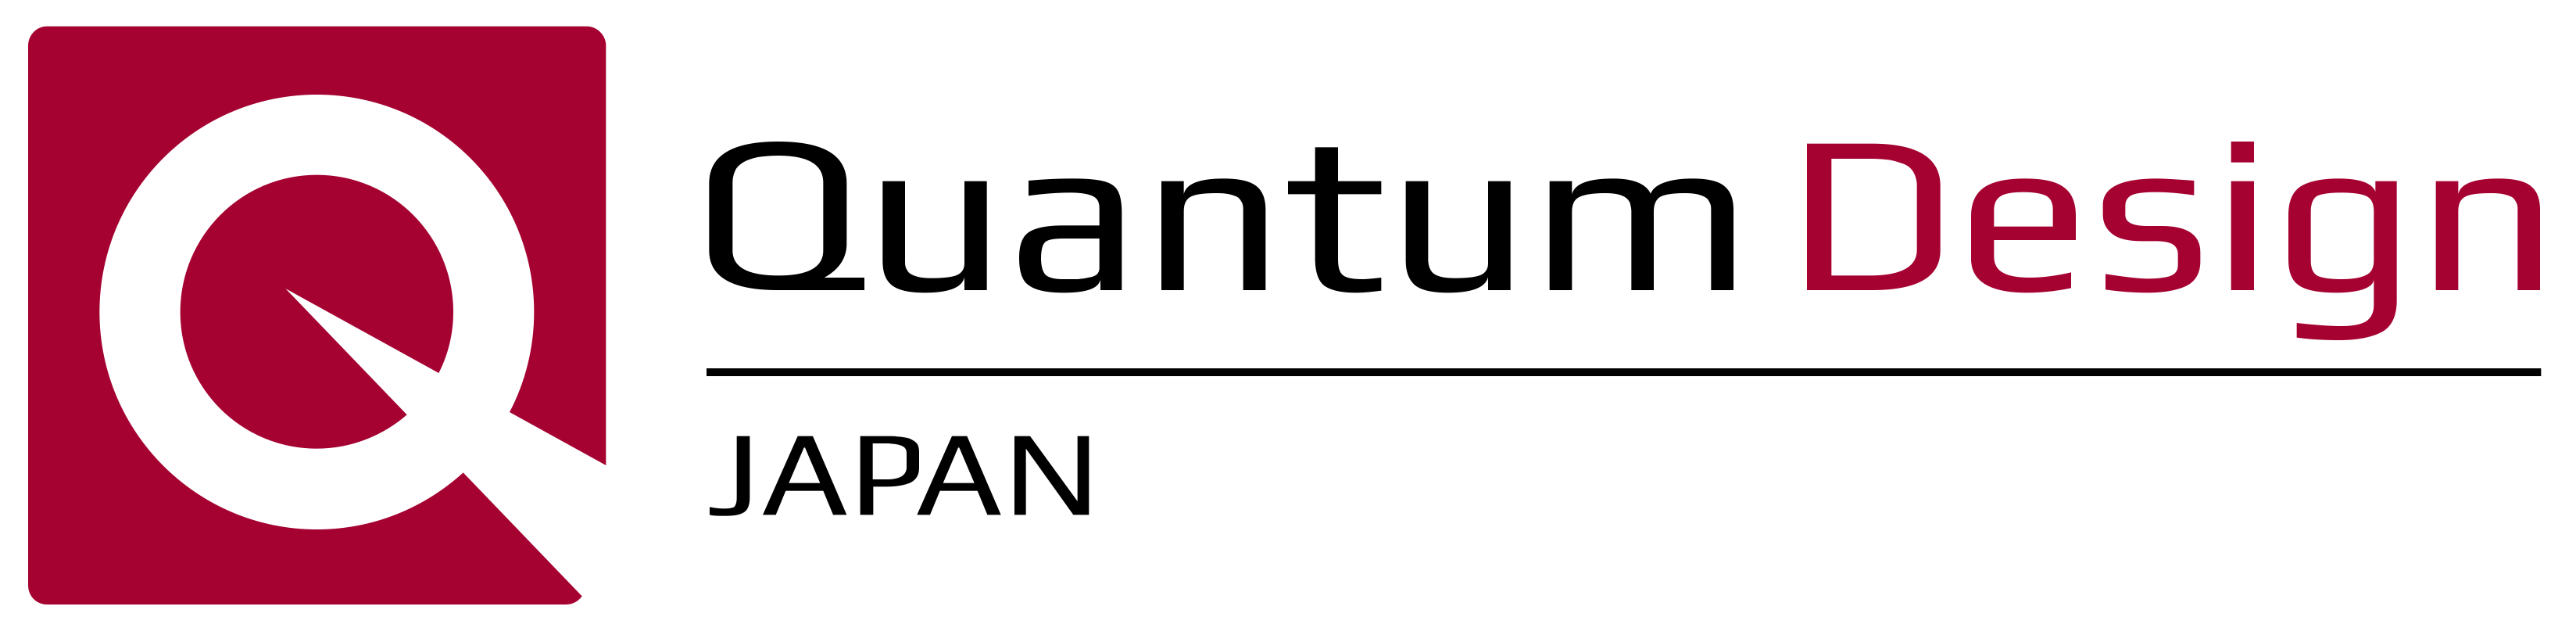 Quantum Design Japan, Inc.